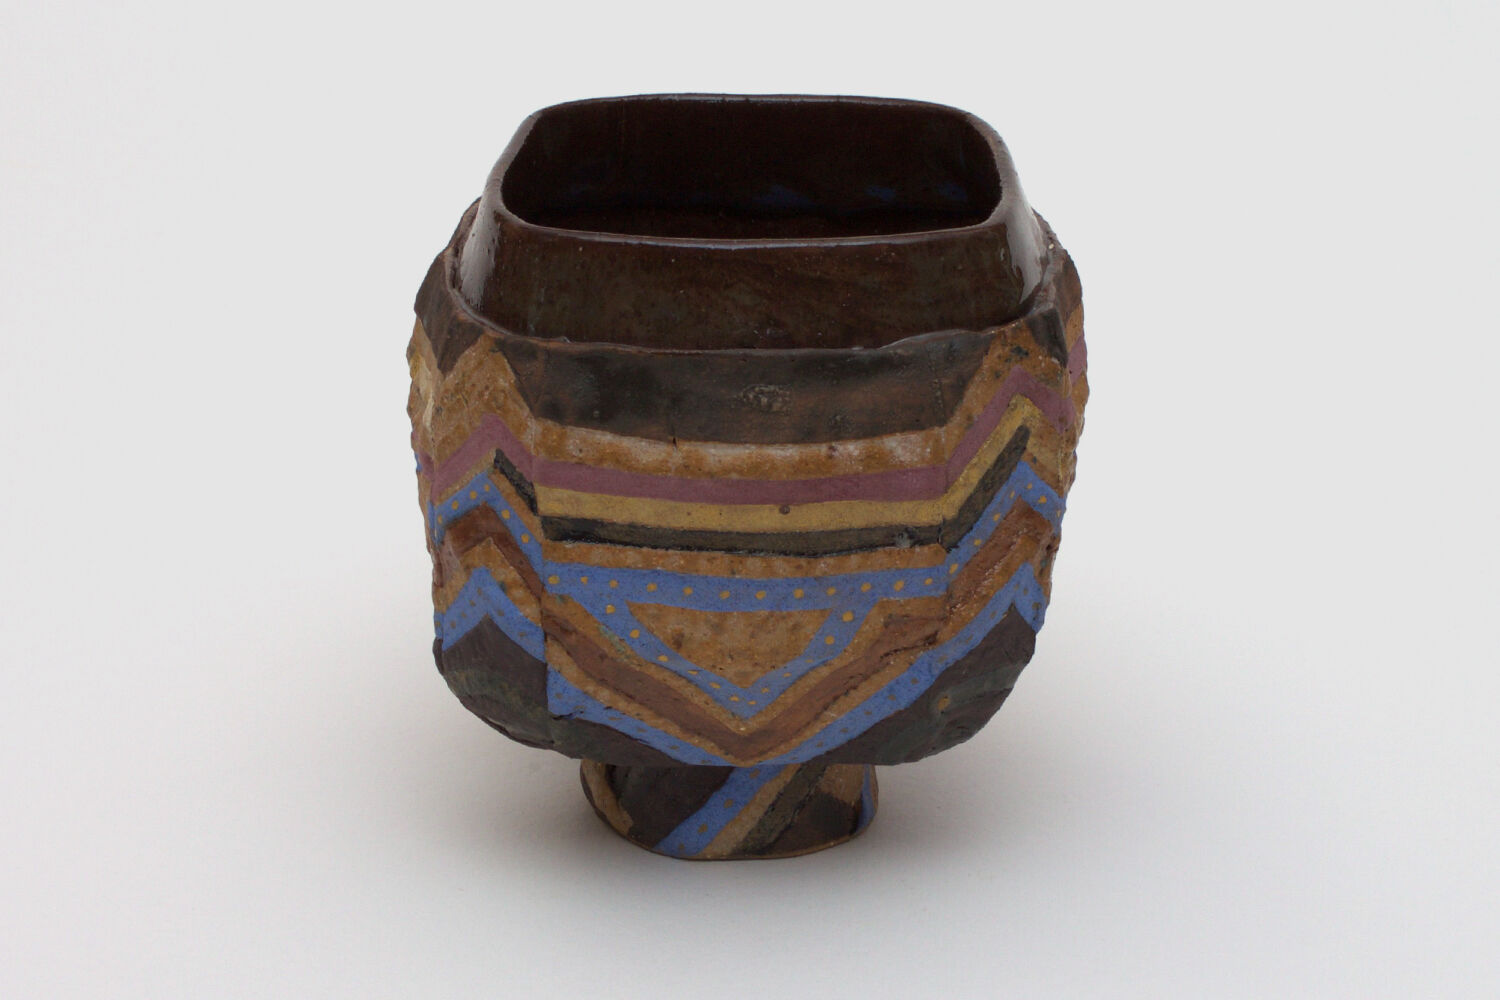 Robert Cooper Ceramic Tea Bowl 064